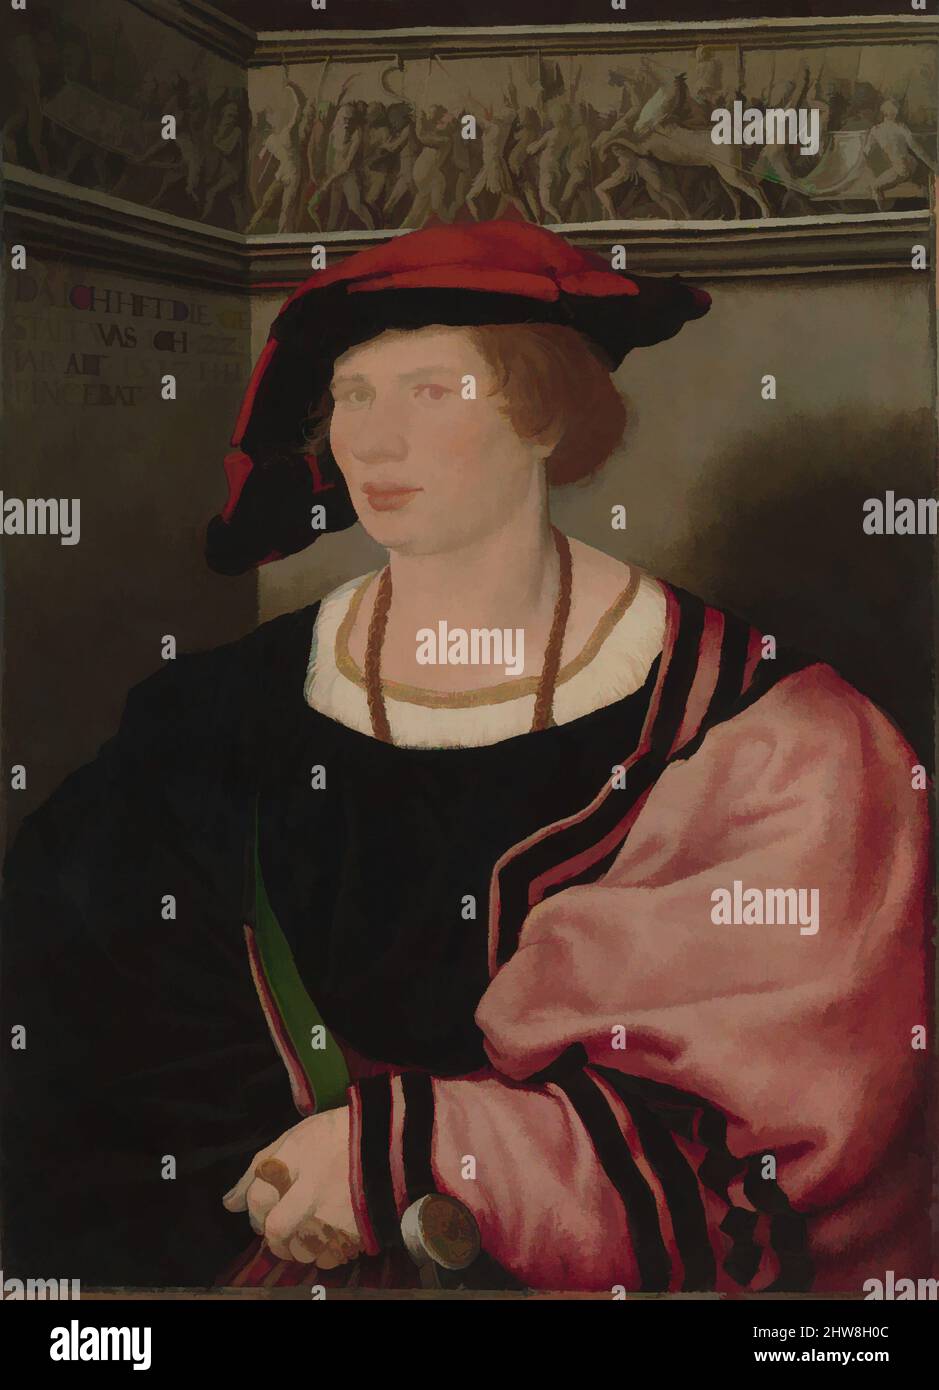 Art inspiré par Benedikt von Hertenstein (né vers 1495, mort en 1522), 1517, huile et or sur papier, posé sur bois, total 20 1/2 x 15 po. (52,4 x 38,1 cm); surface peinte 20 3/8 x 14 5/8 po (51,4 x 37,1 cm), peintures, Hans Holbein le plus jeune (allemand, Augsbourg 1497/98–1543, œuvres classiques modernisées par Artotop avec une touche de modernité. Formes, couleur et valeur, impact visuel accrocheur sur l'art émotions par la liberté d'œuvres d'art d'une manière contemporaine. Un message intemporel qui cherche une nouvelle direction créative. Artistes qui se tournent vers le support numérique et créent le NFT Artotop Banque D'Images